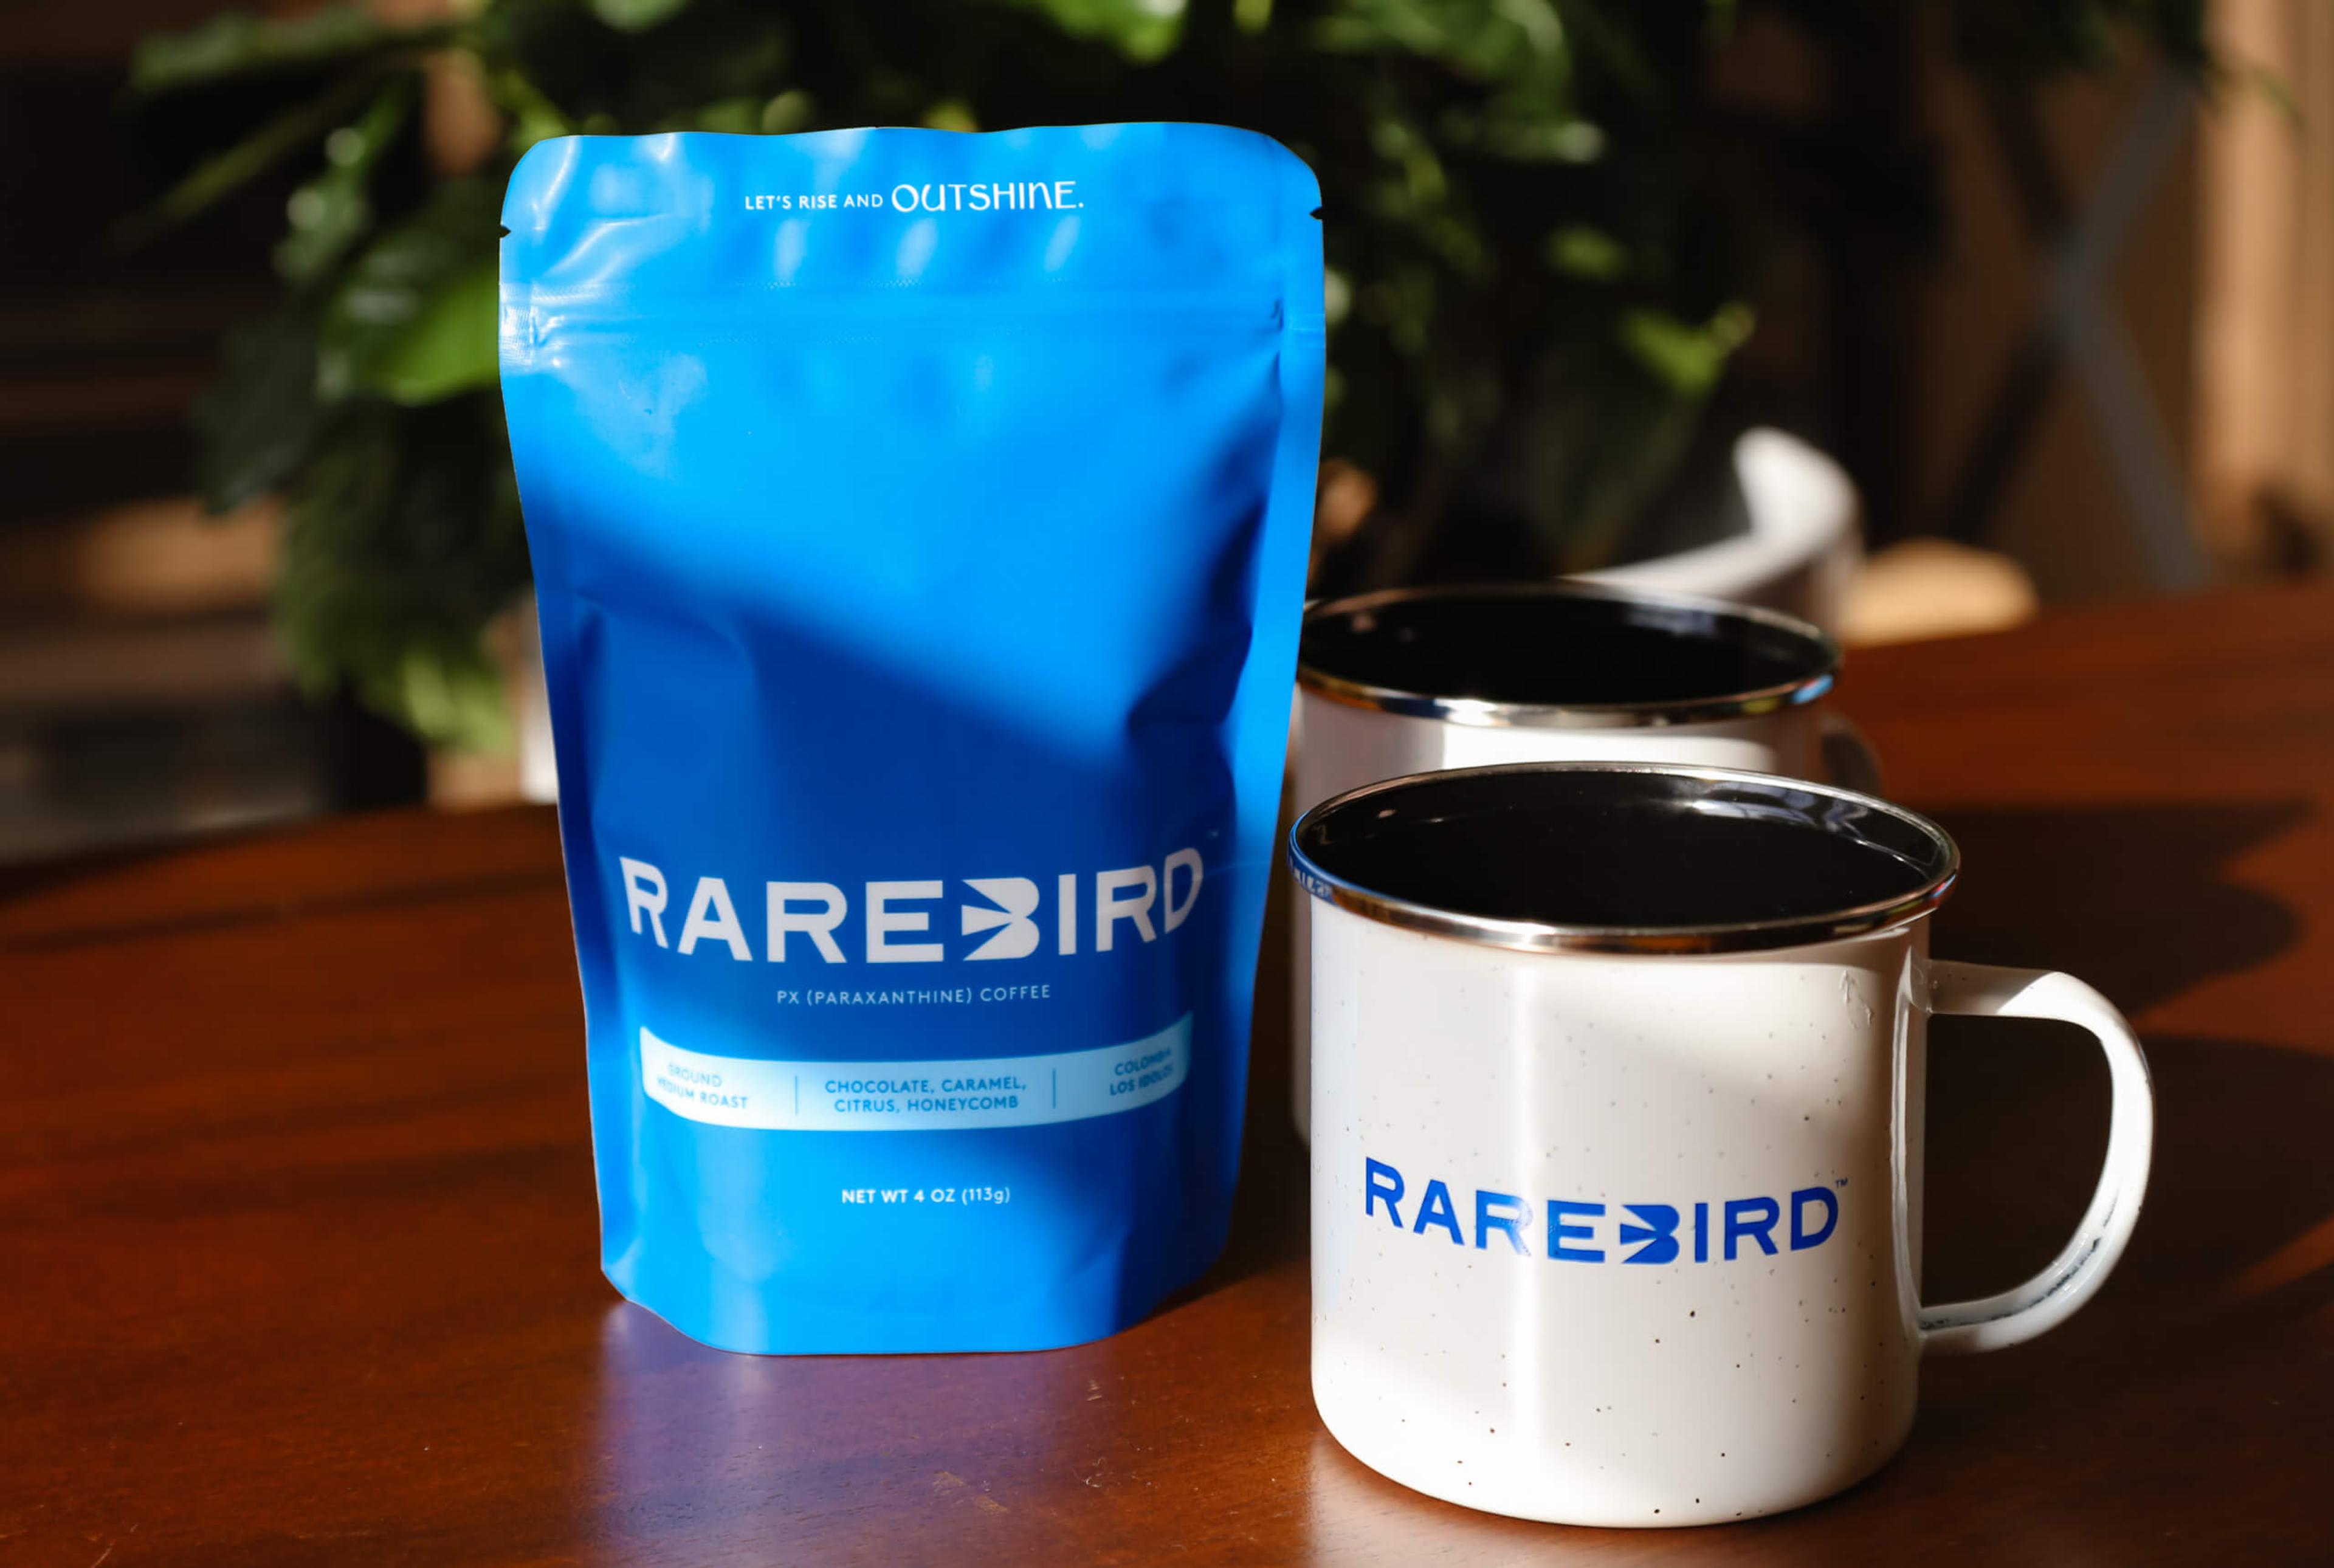 Rarebird coffee bag with mug